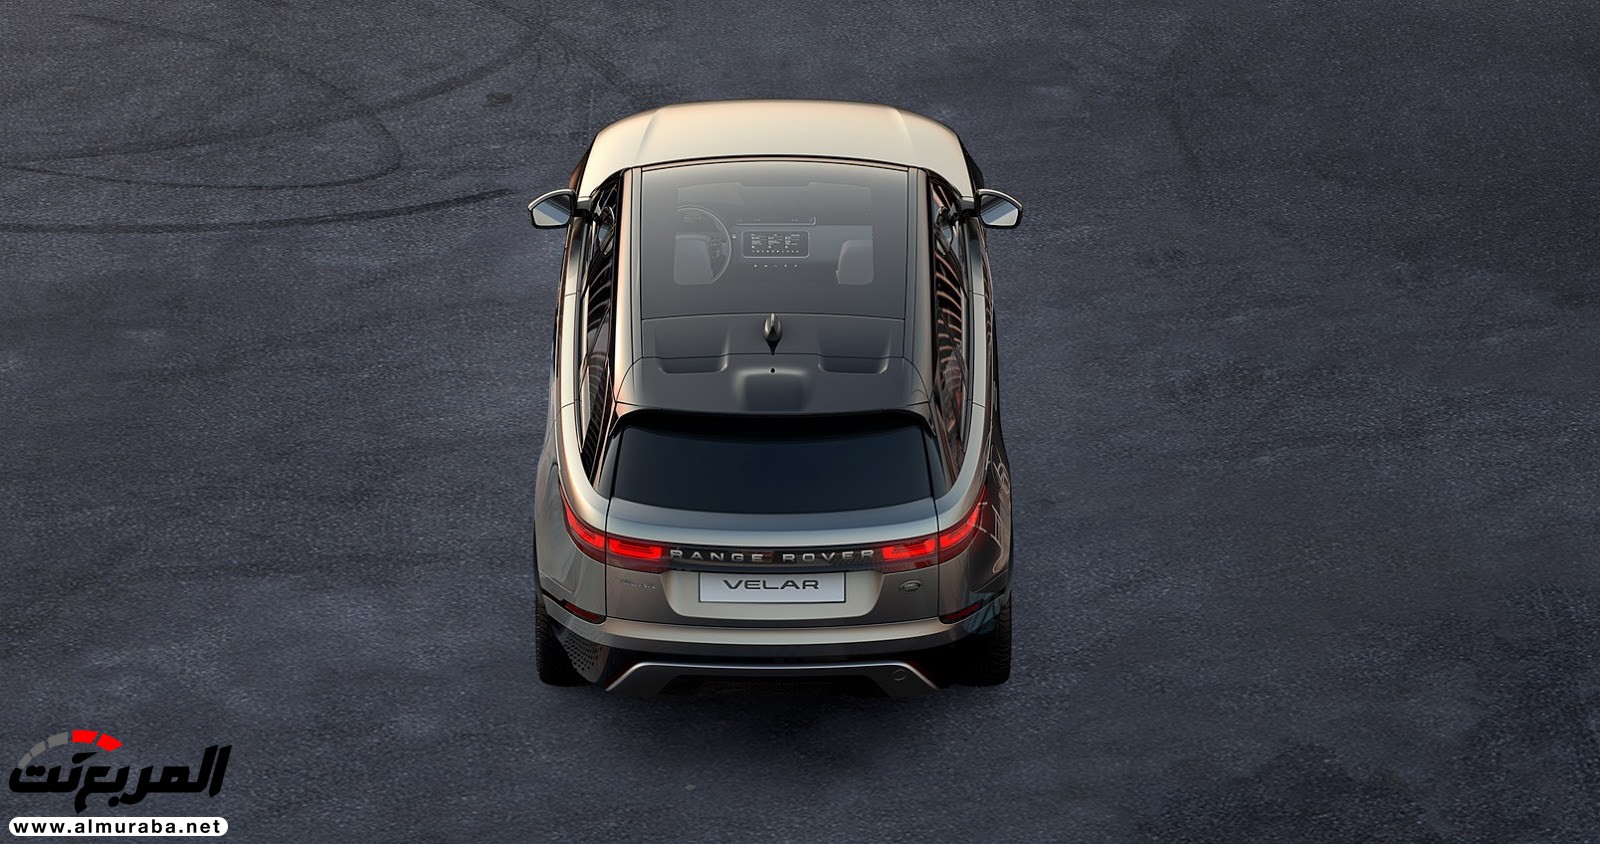 تُرى أهذا هو شكل داخل "رينج روفر" فيلار الجديدة كليا 2018؟ Range Rover Velar 4